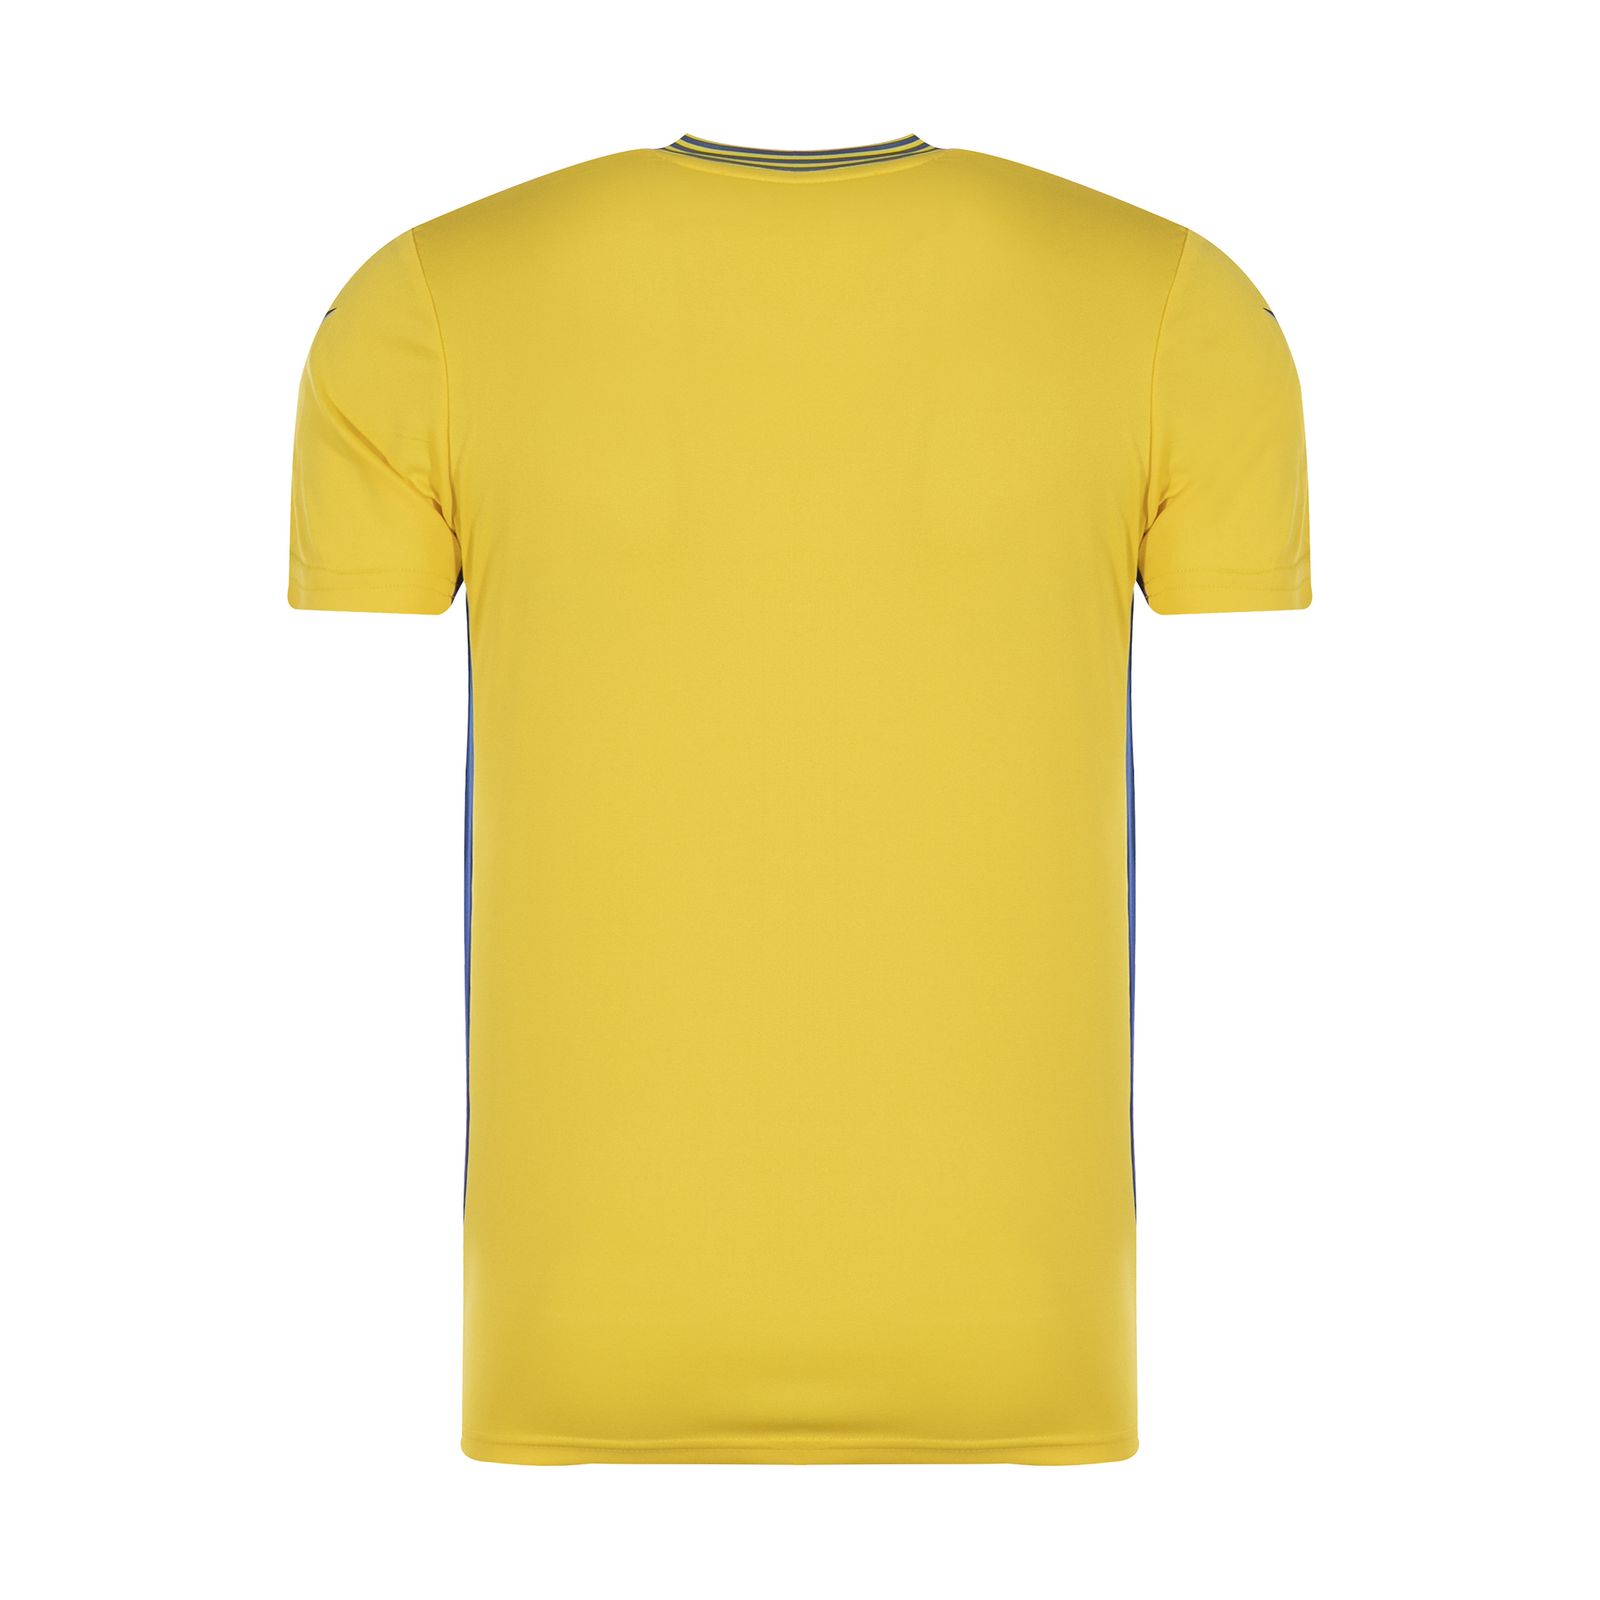 ست تی شرت و شلوارک ورزشی مردانه مکرون مدل کاناپوس رنگ زرد -  - 2